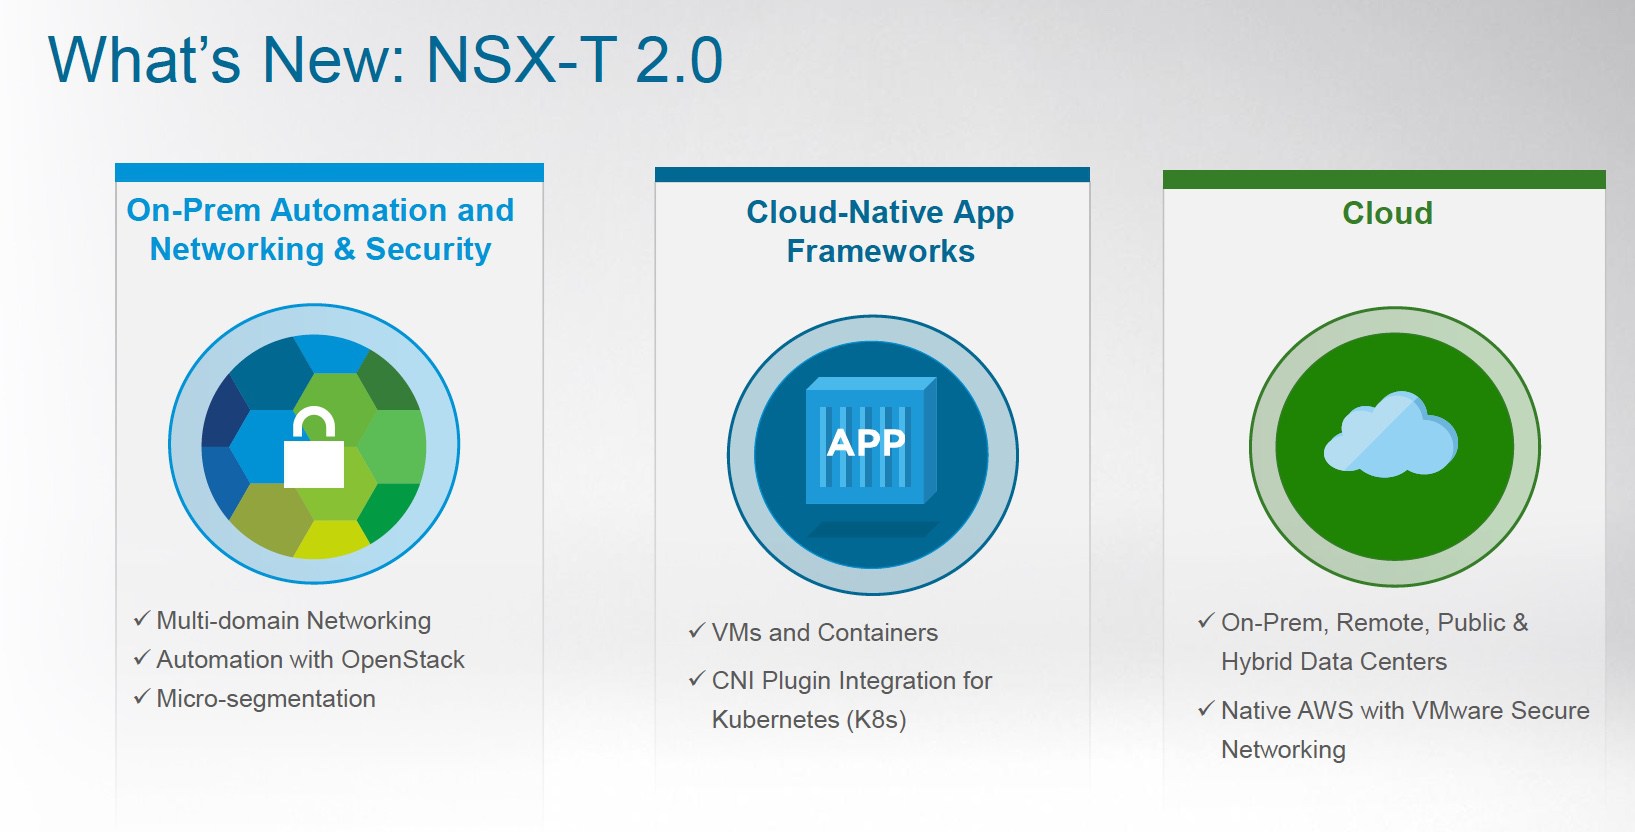 انتشار نسخه جدیدی از نرم افزار شبکه مجازی NSX توسط شرکت وی ام ویر VMware با هدف آسانتر نمودن مدیریت شبکه از طریق برنامه های مبتنی بر Cloud و Container